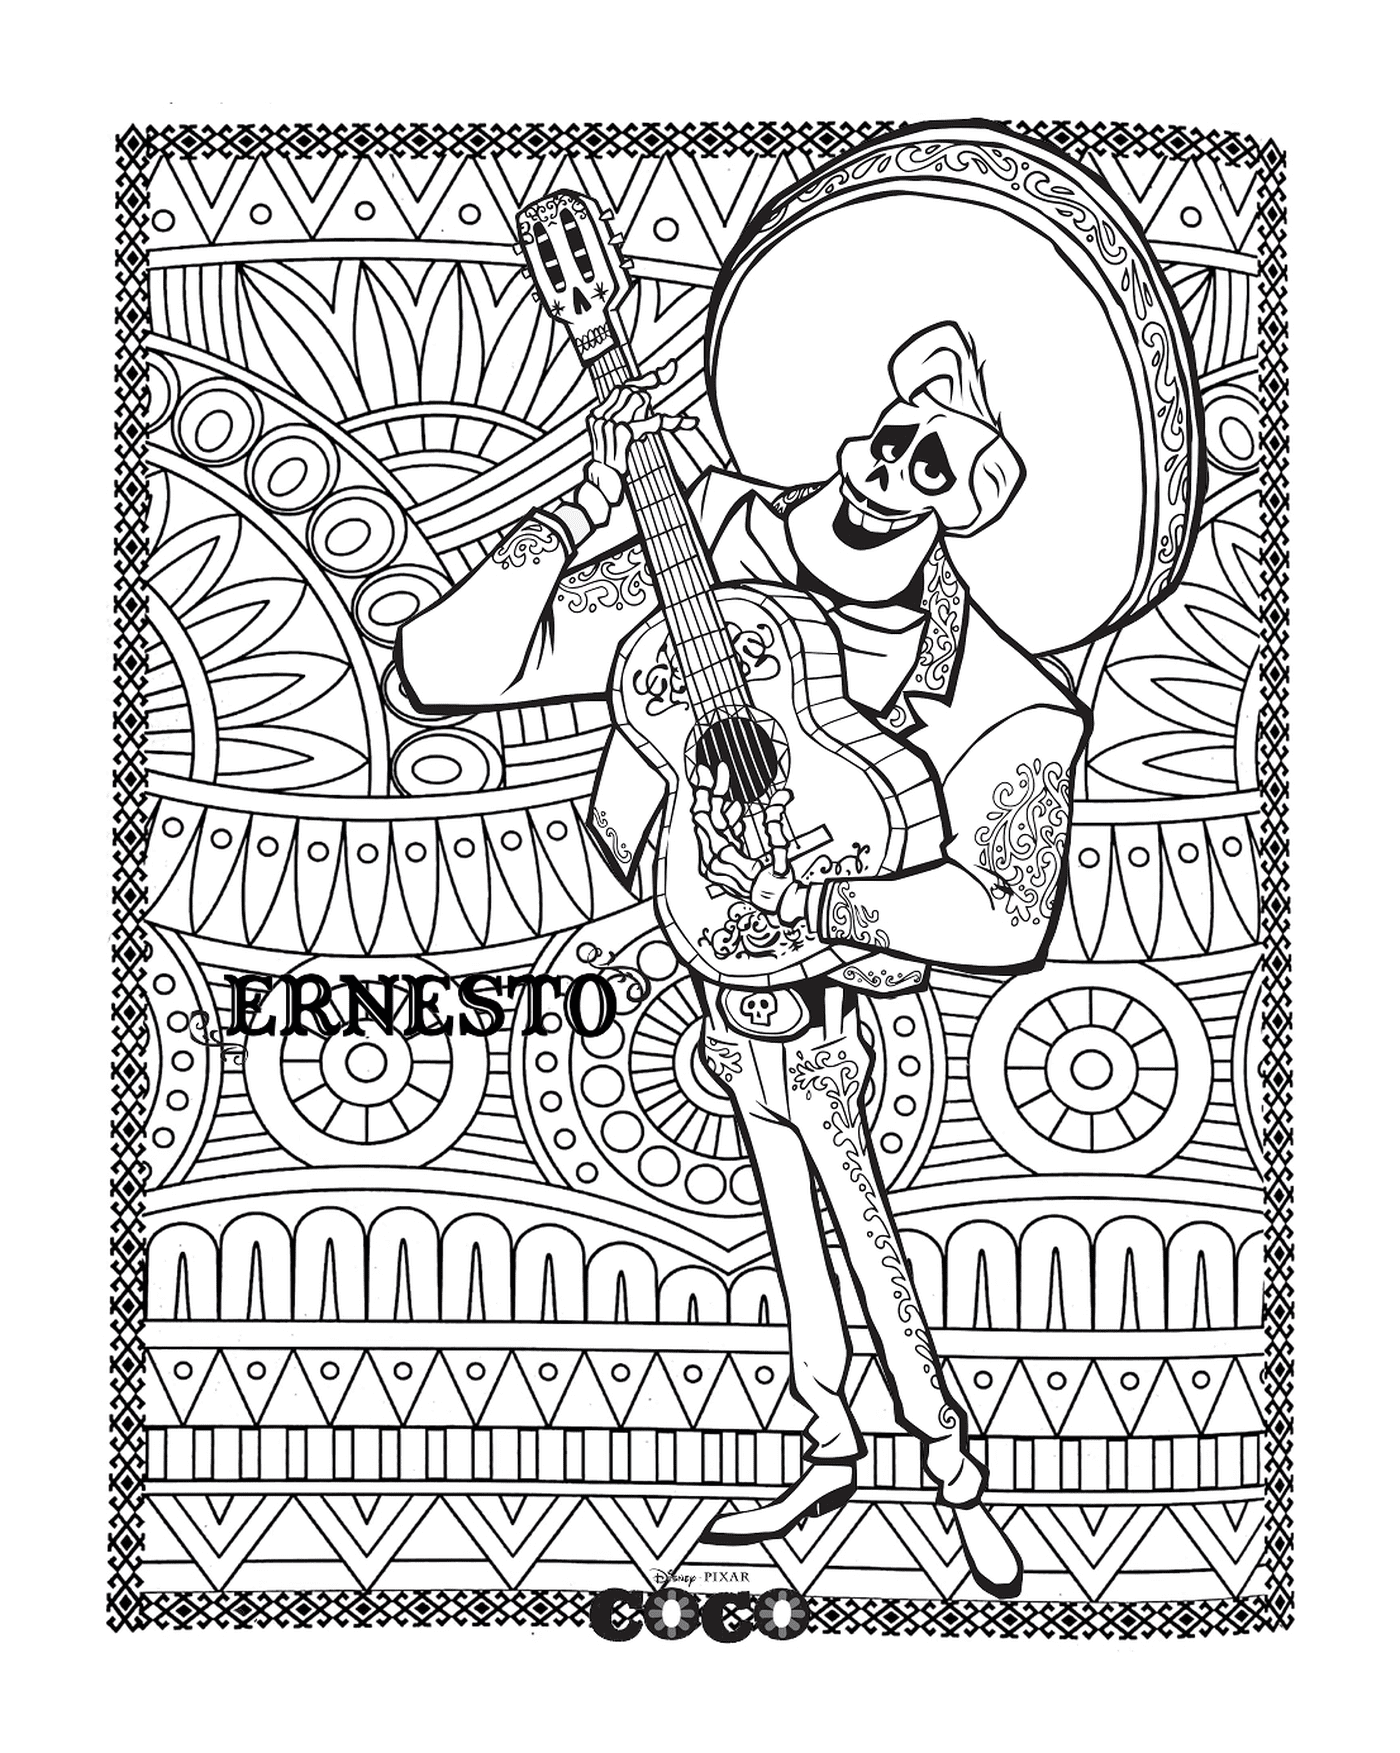   Ernesto, fond mandala pour adultes dans Coco, de Disney 